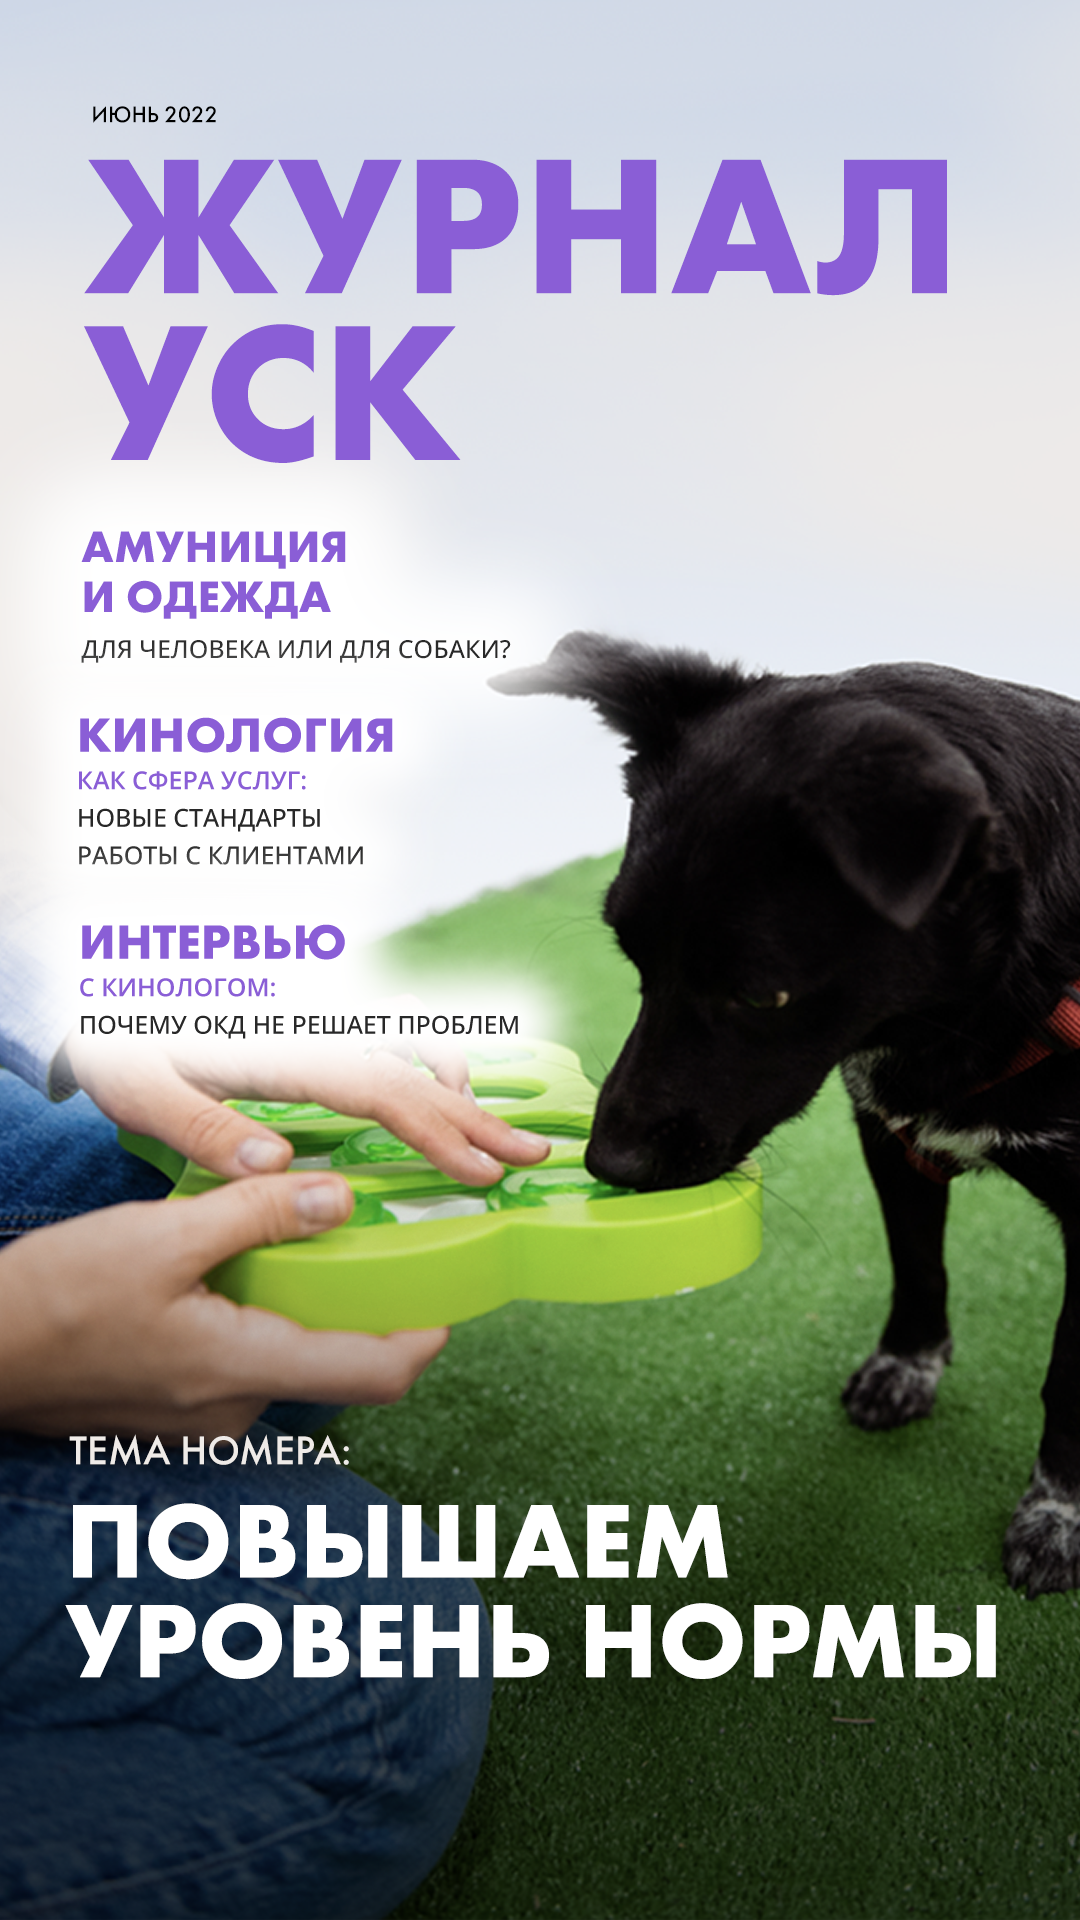 Собачье ателье: белоруска ушла из найма, чтобы шить одежду для животных